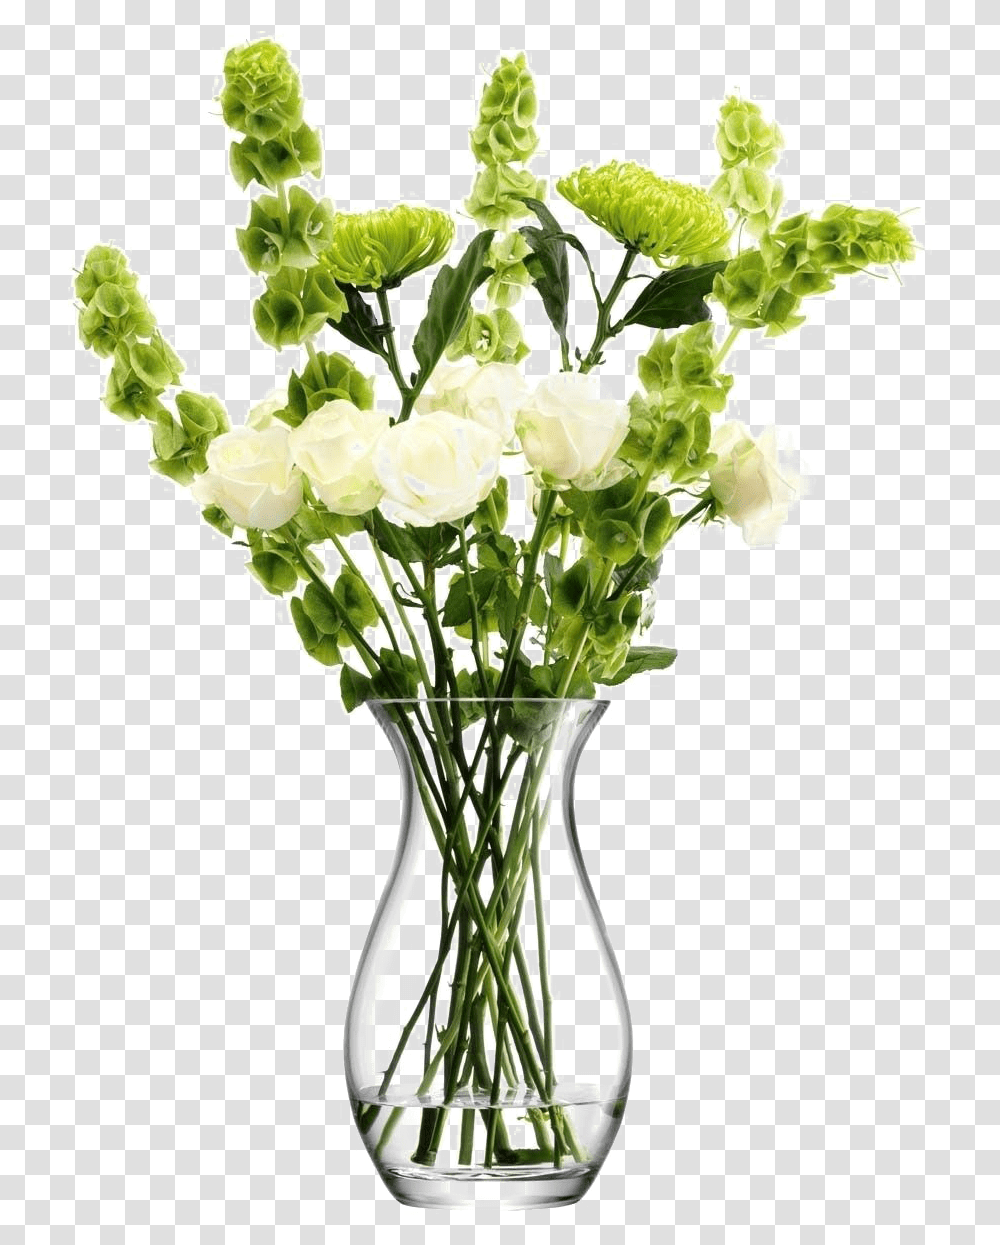 Flower Vase Image Background Arts Flower Vase, Plant, Blossom, Jar, Pottery Transparent Png